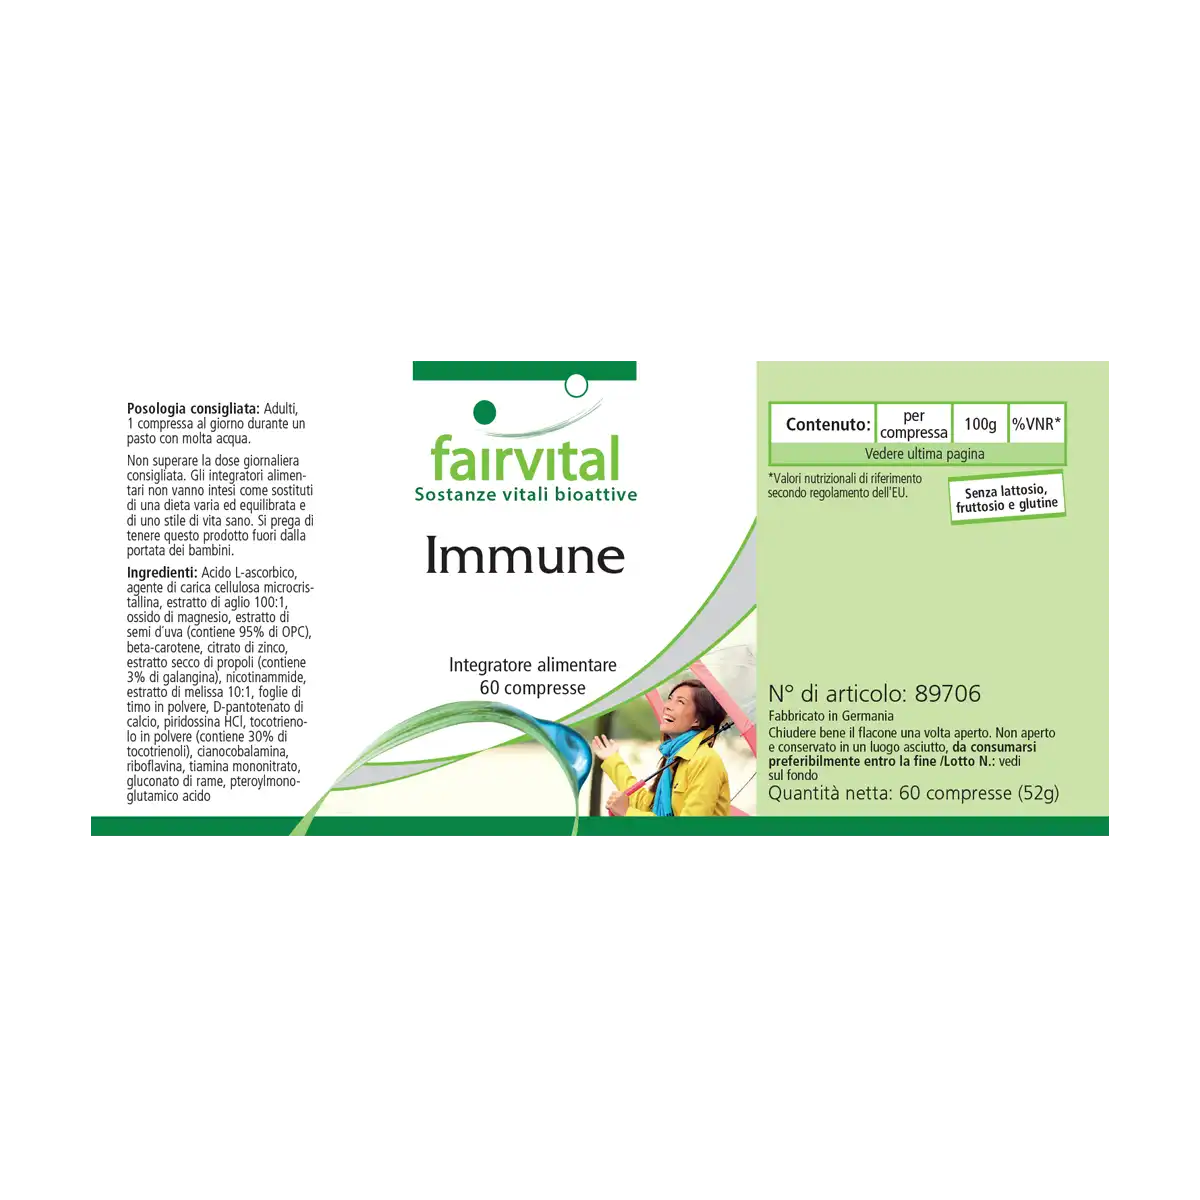 Immuunformule - 60 tabletten